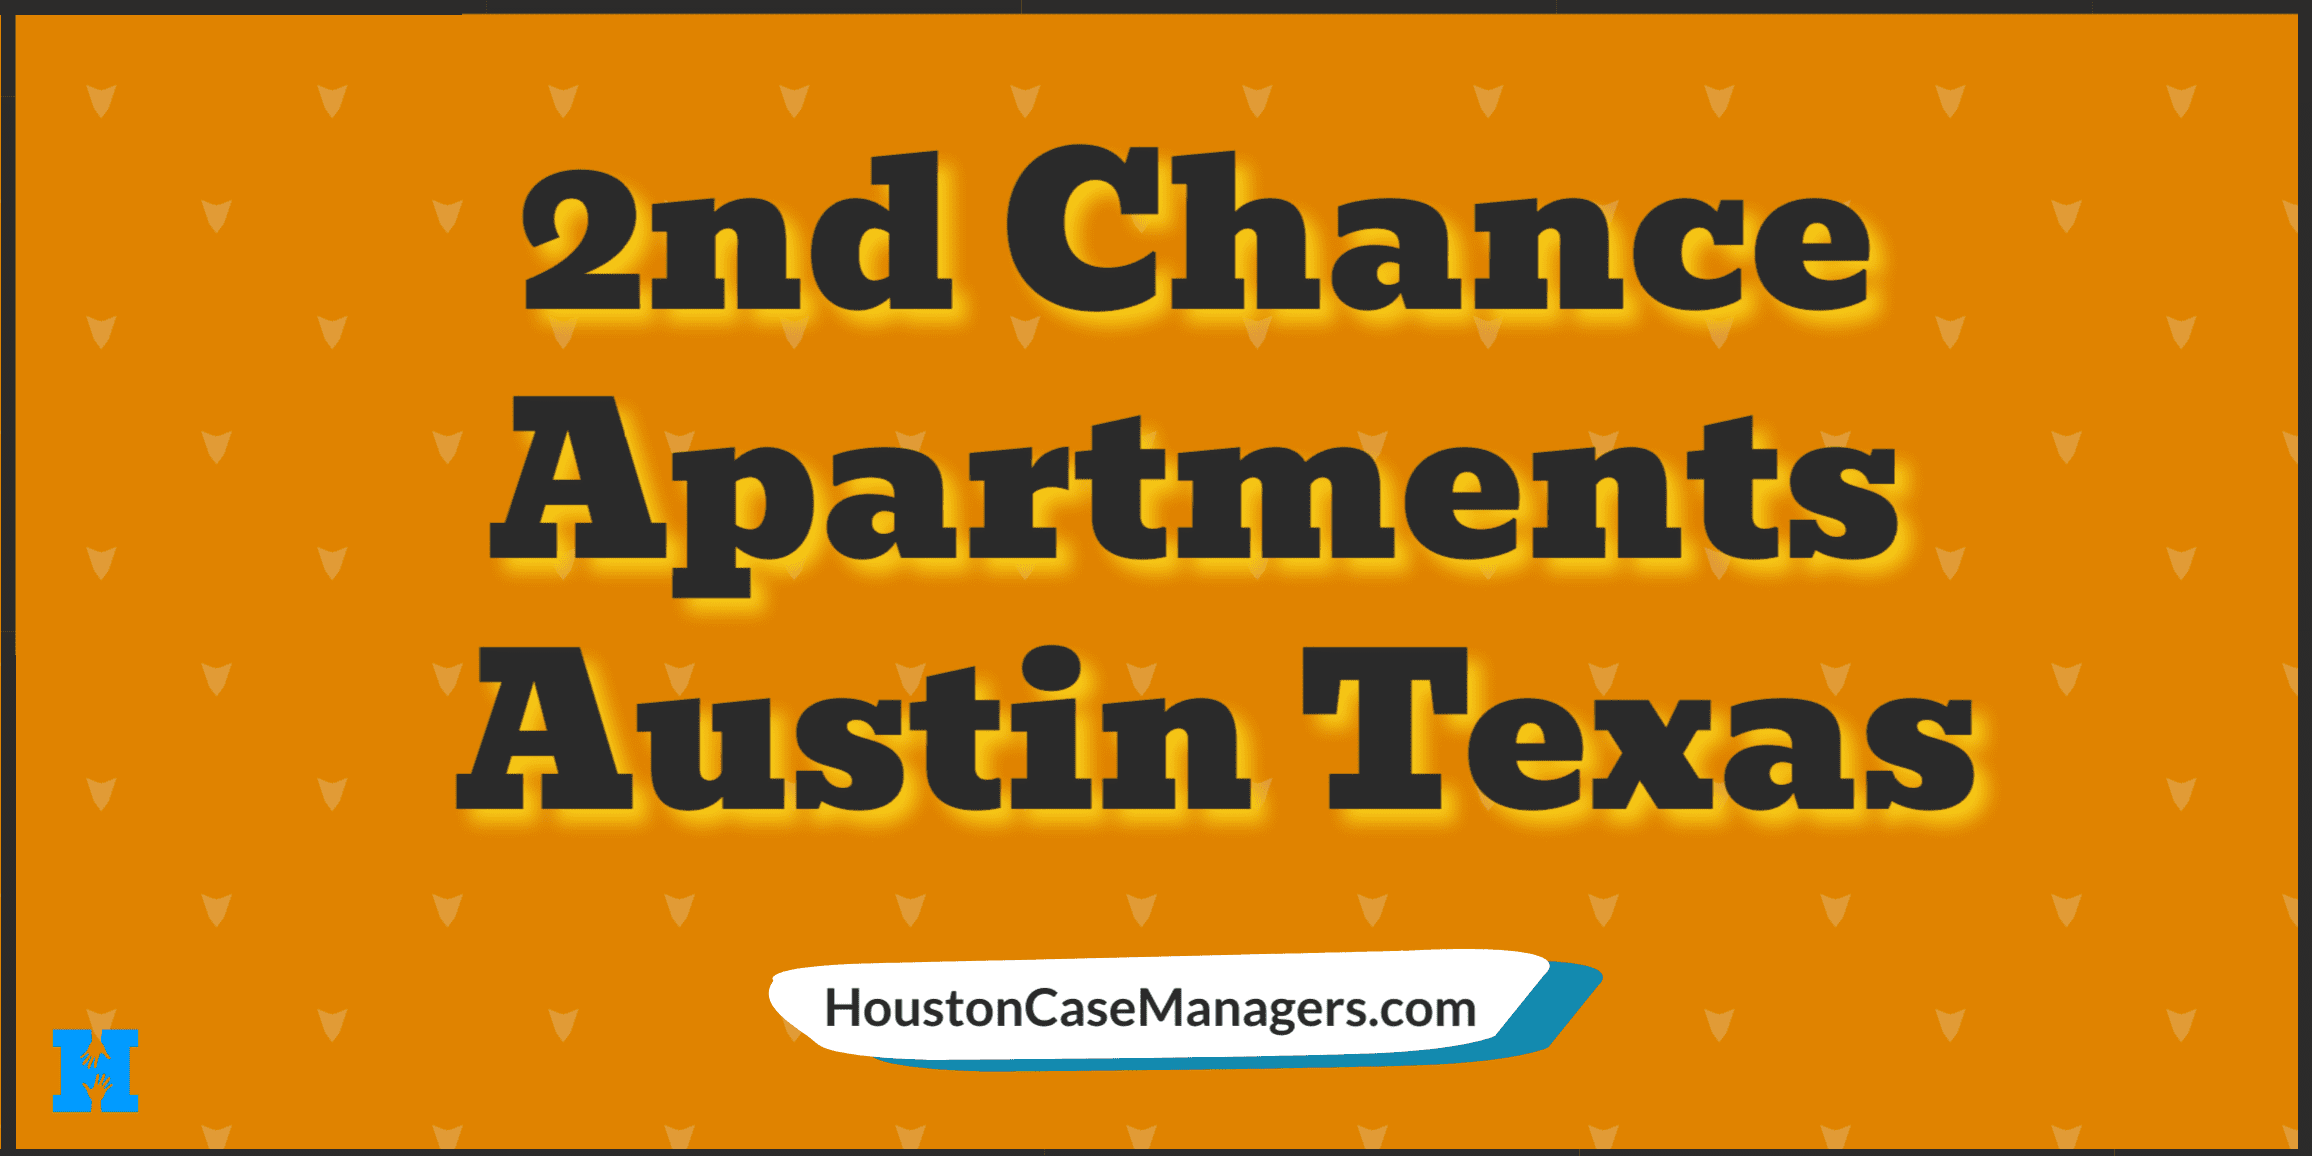 2nd chance apartments Austin Texas